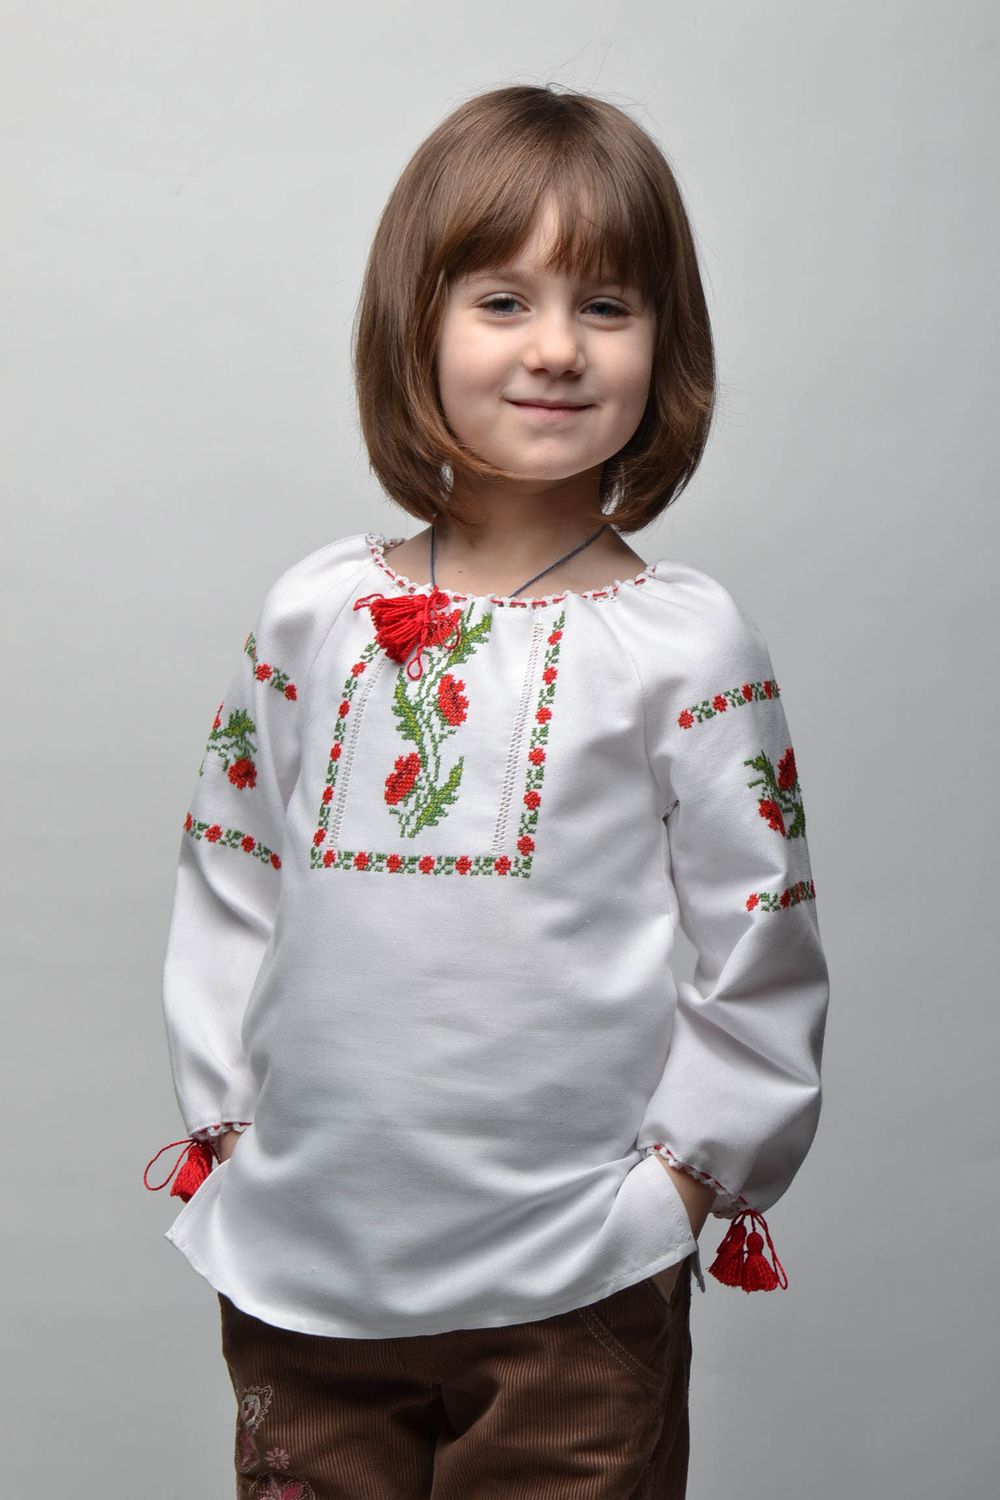 Вышитая рубашка для девочки на 5-7 лет с длинным рукавом фото 1